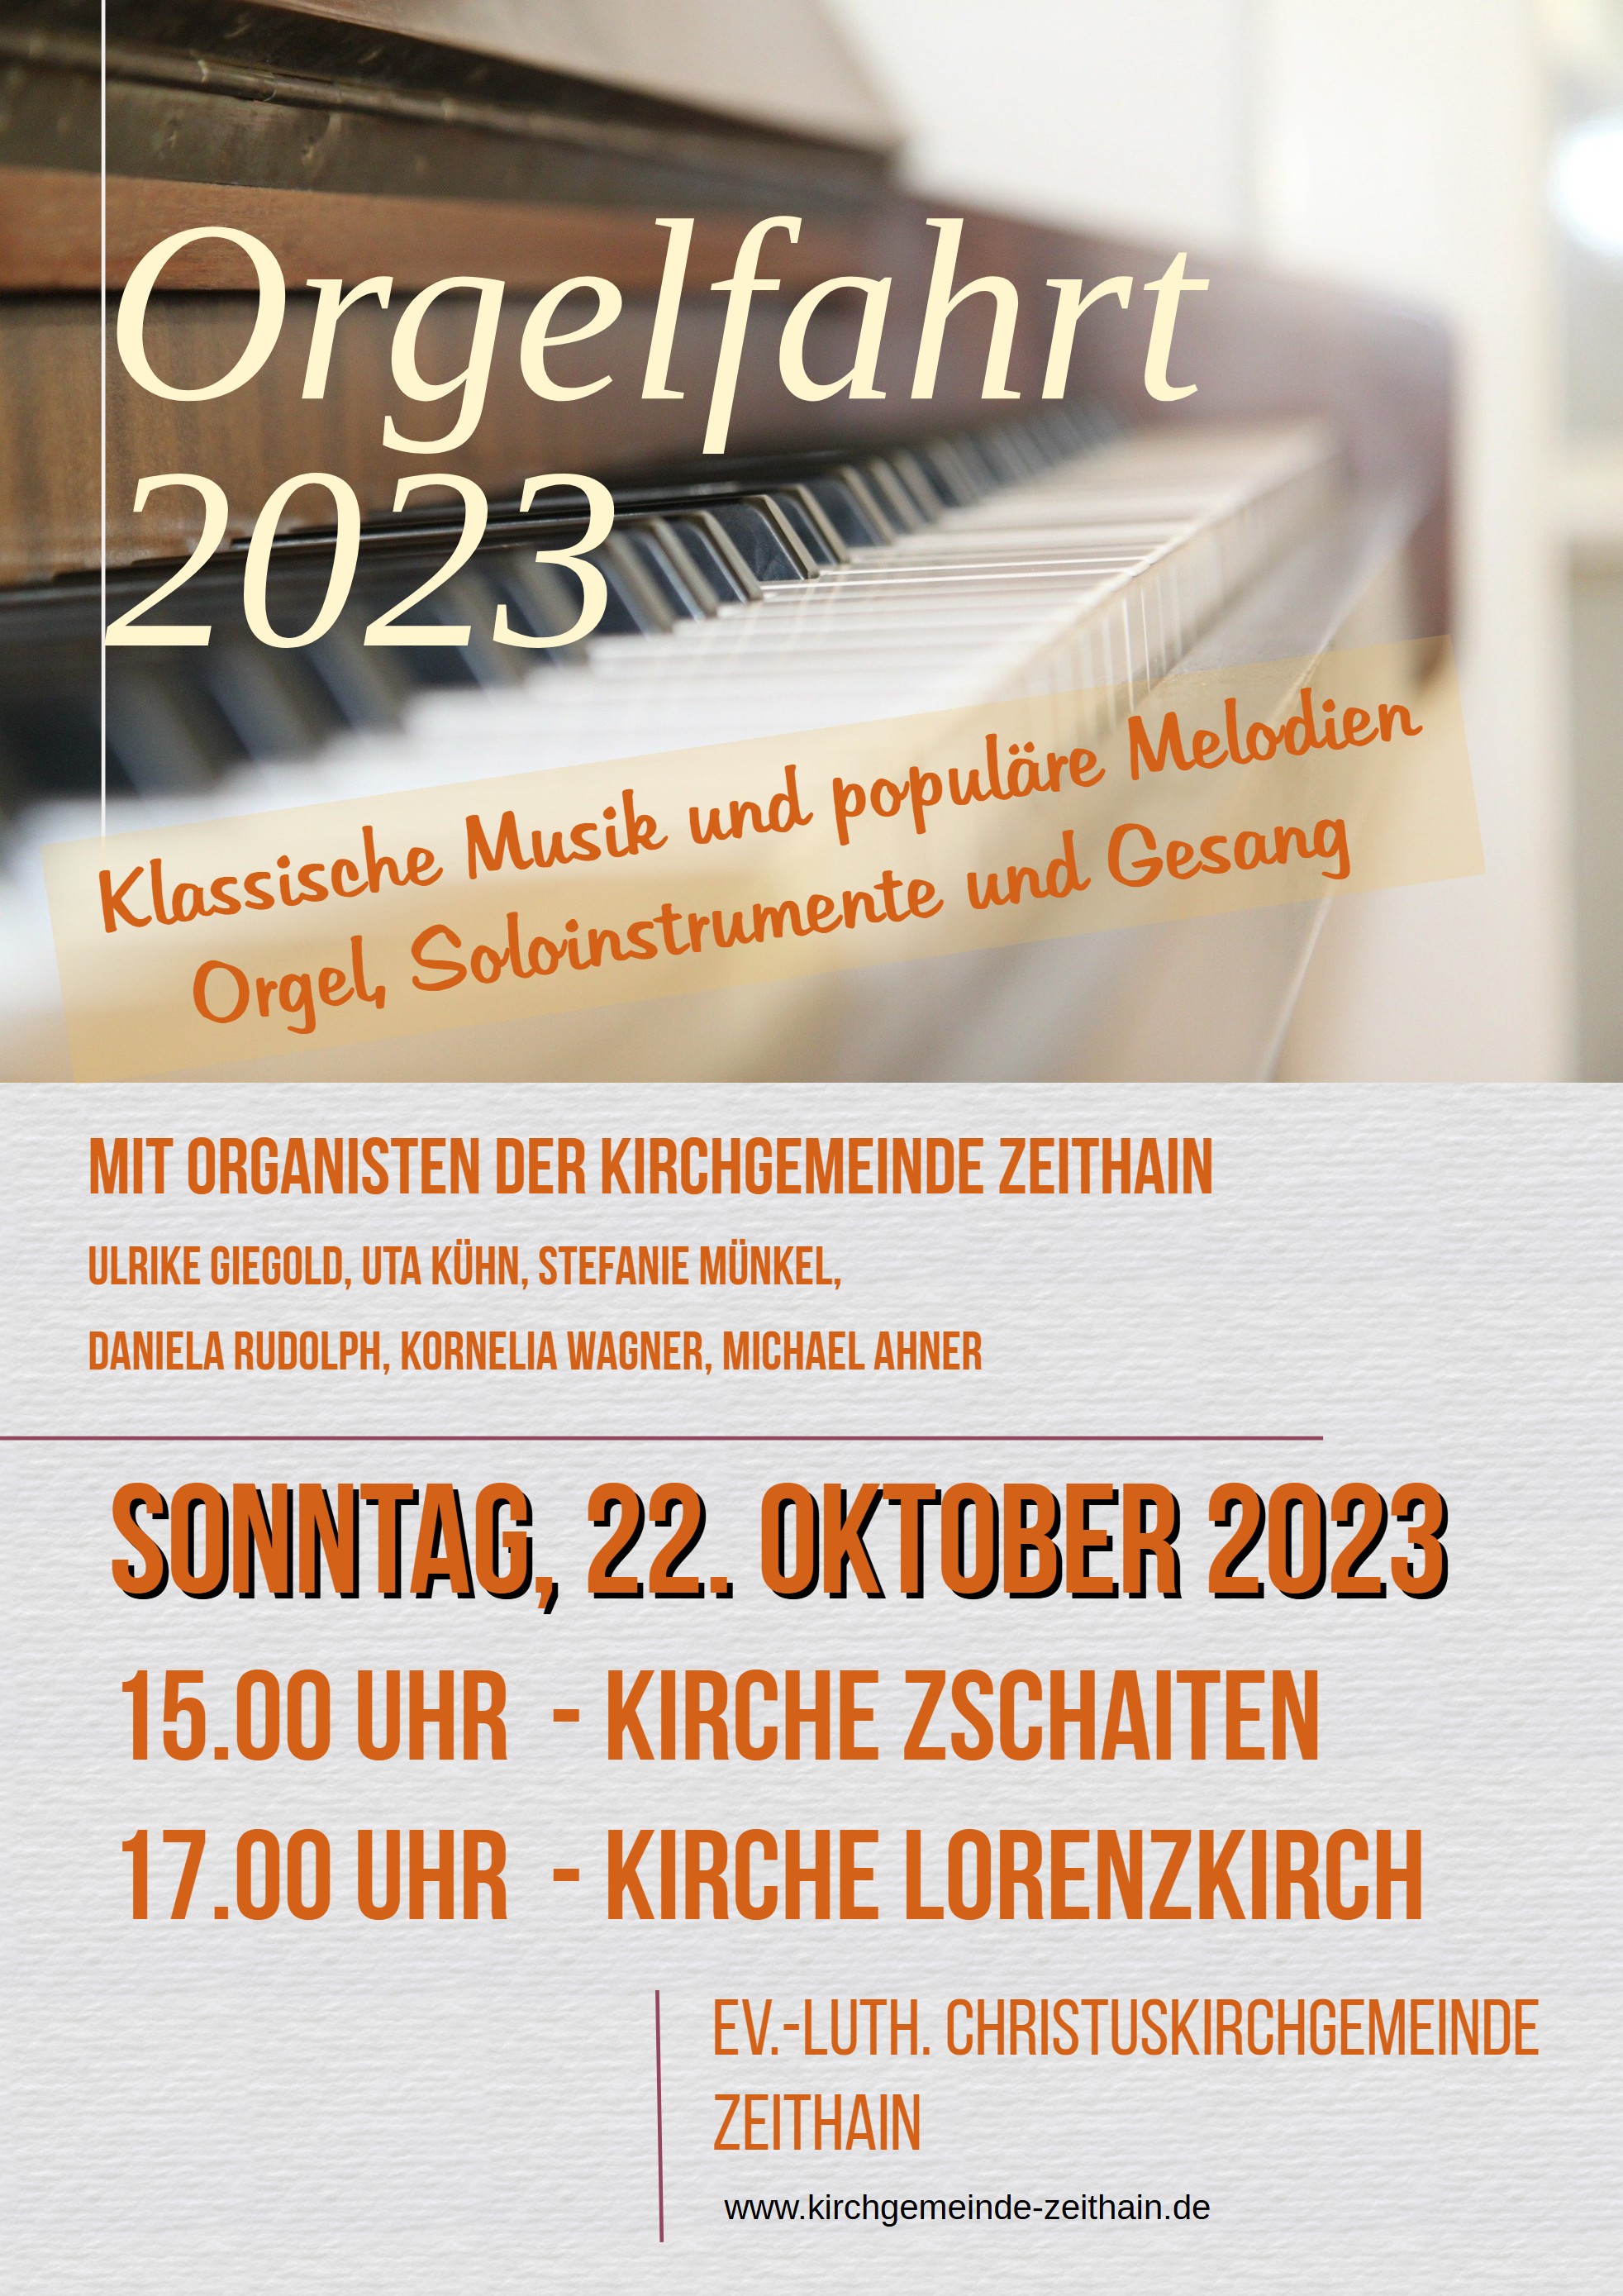 Orgelfahrt am 22. Oktober in Zschaiten und Lorenzkirch